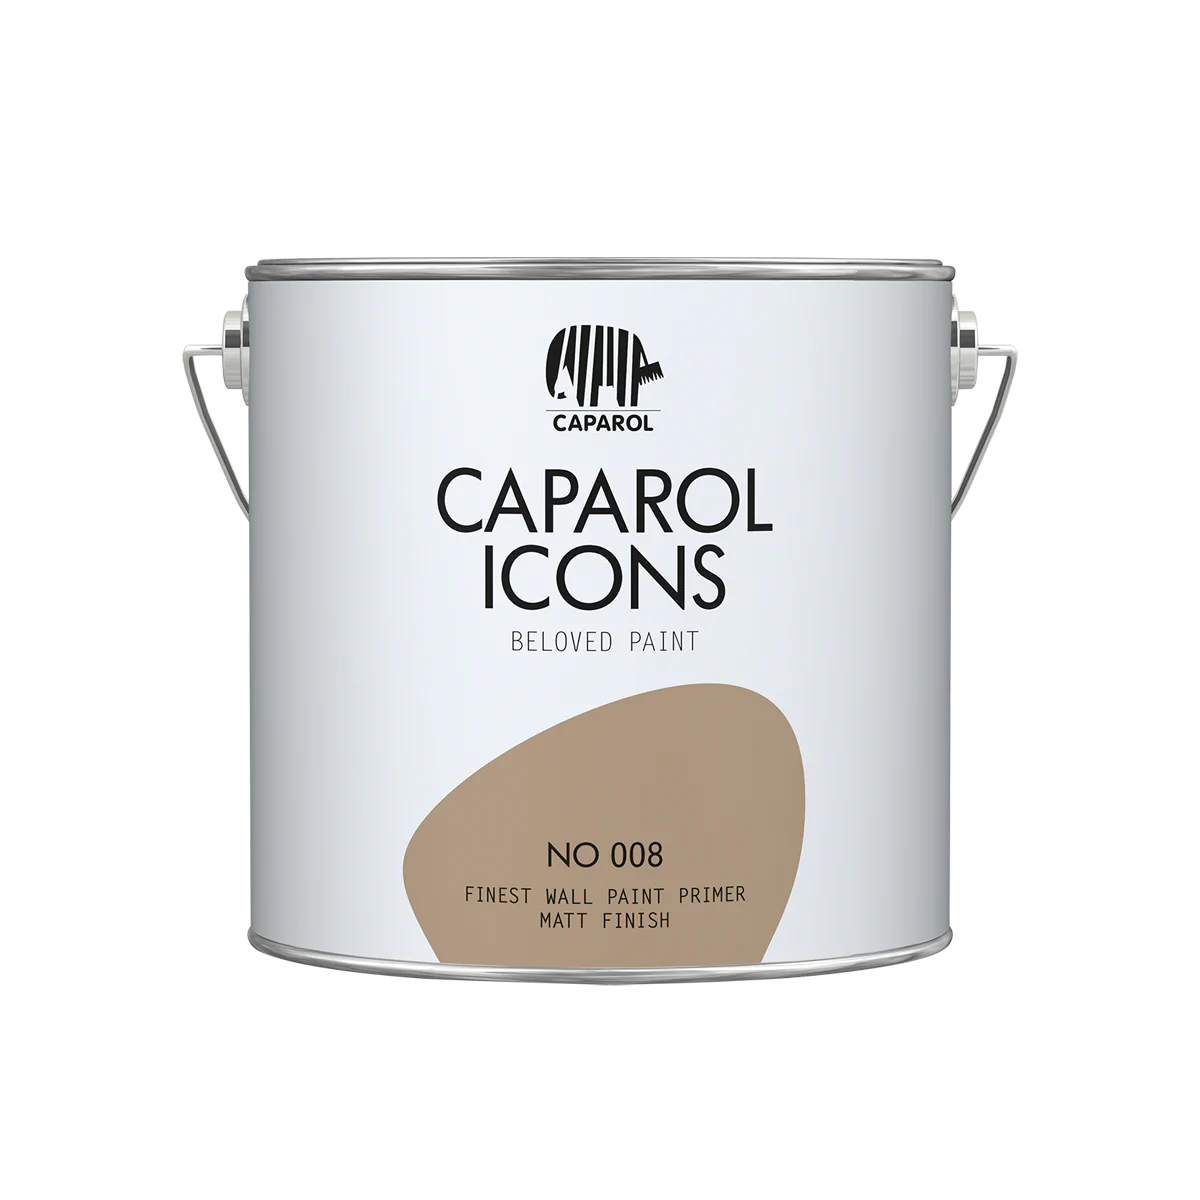 Caparol ICONS FINEST WALL PRIMER NO 008, 2,5l